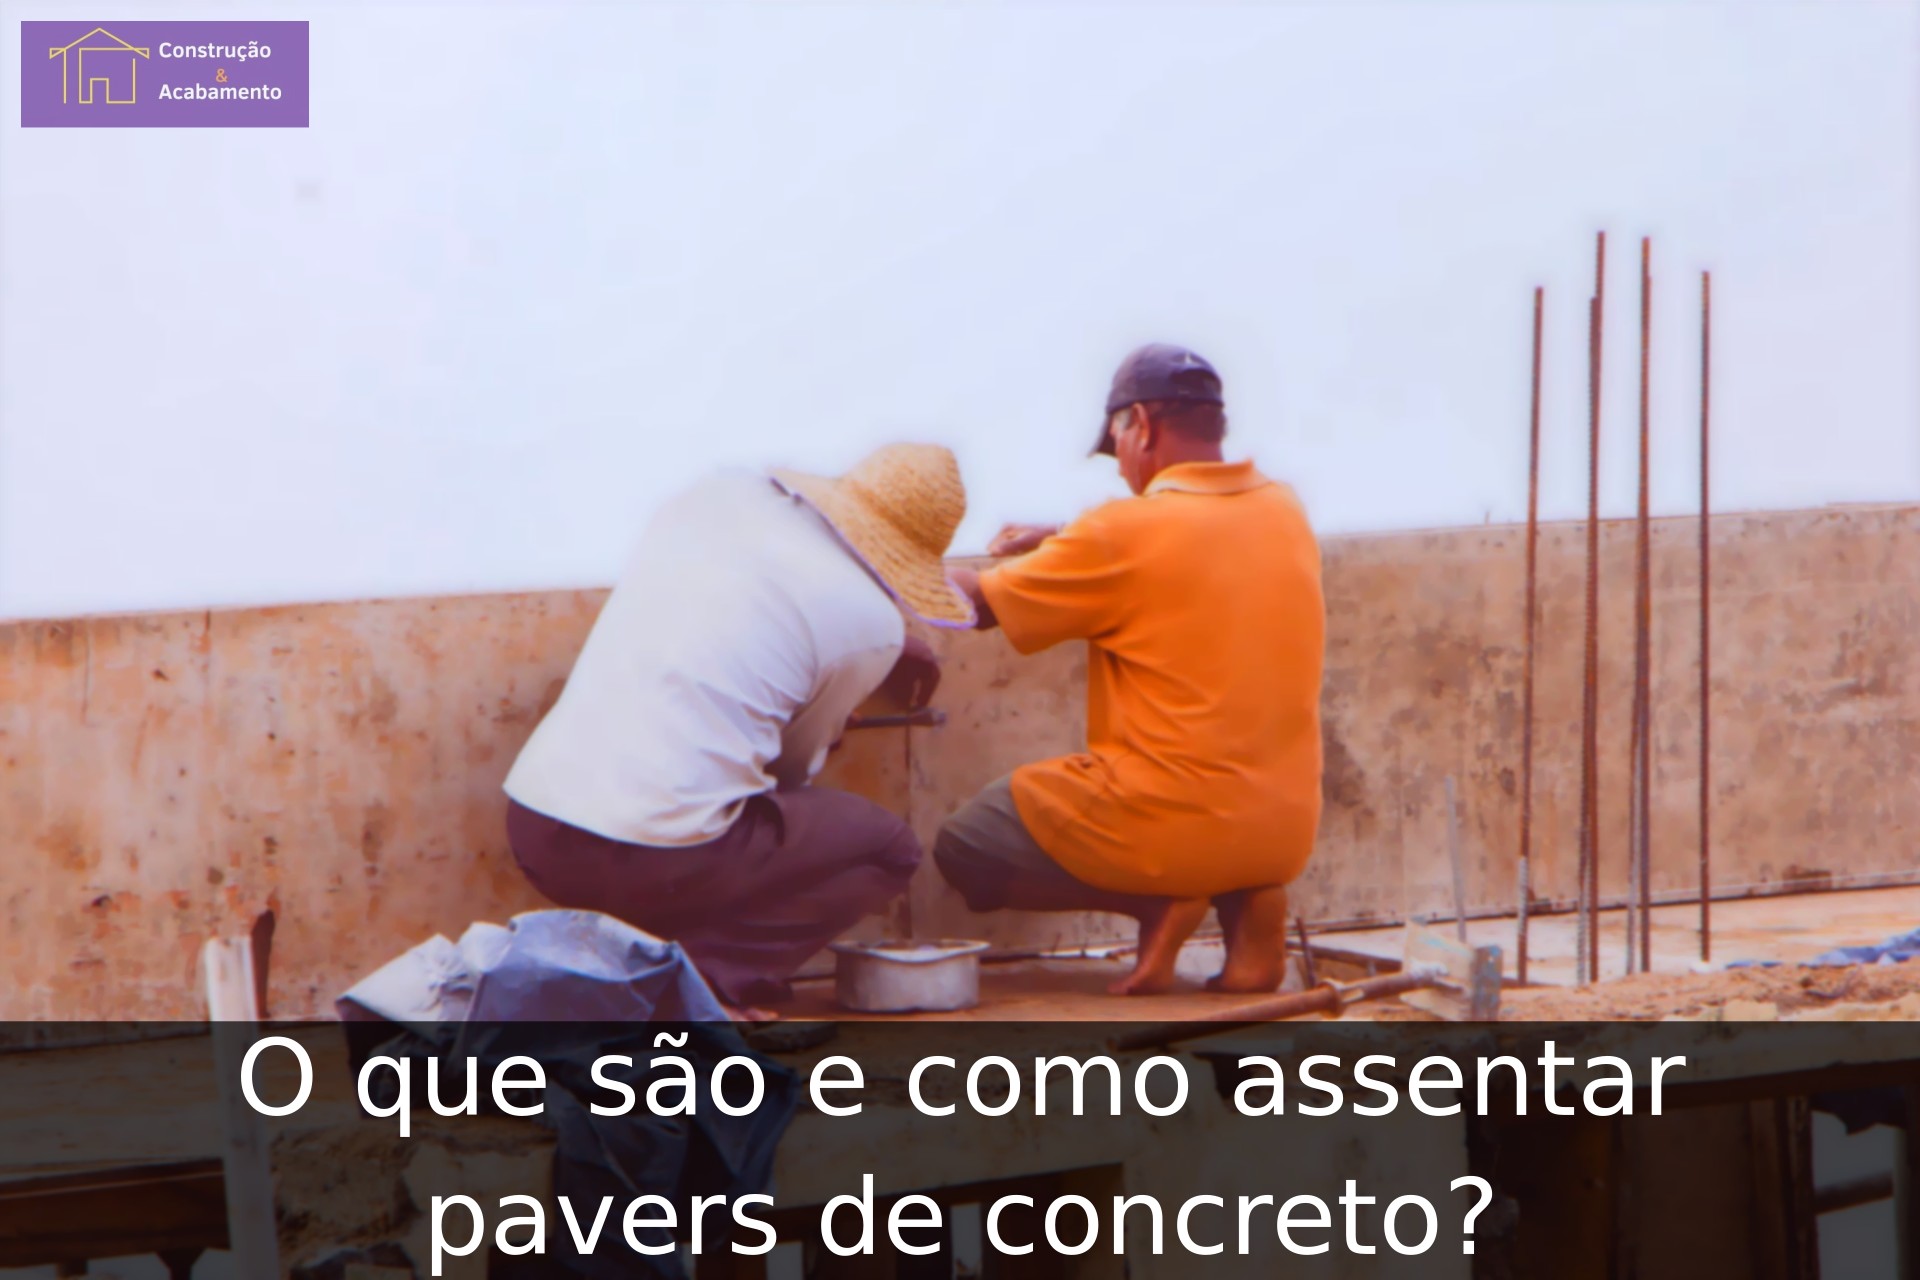 O que são e como assentar pavers de concreto?